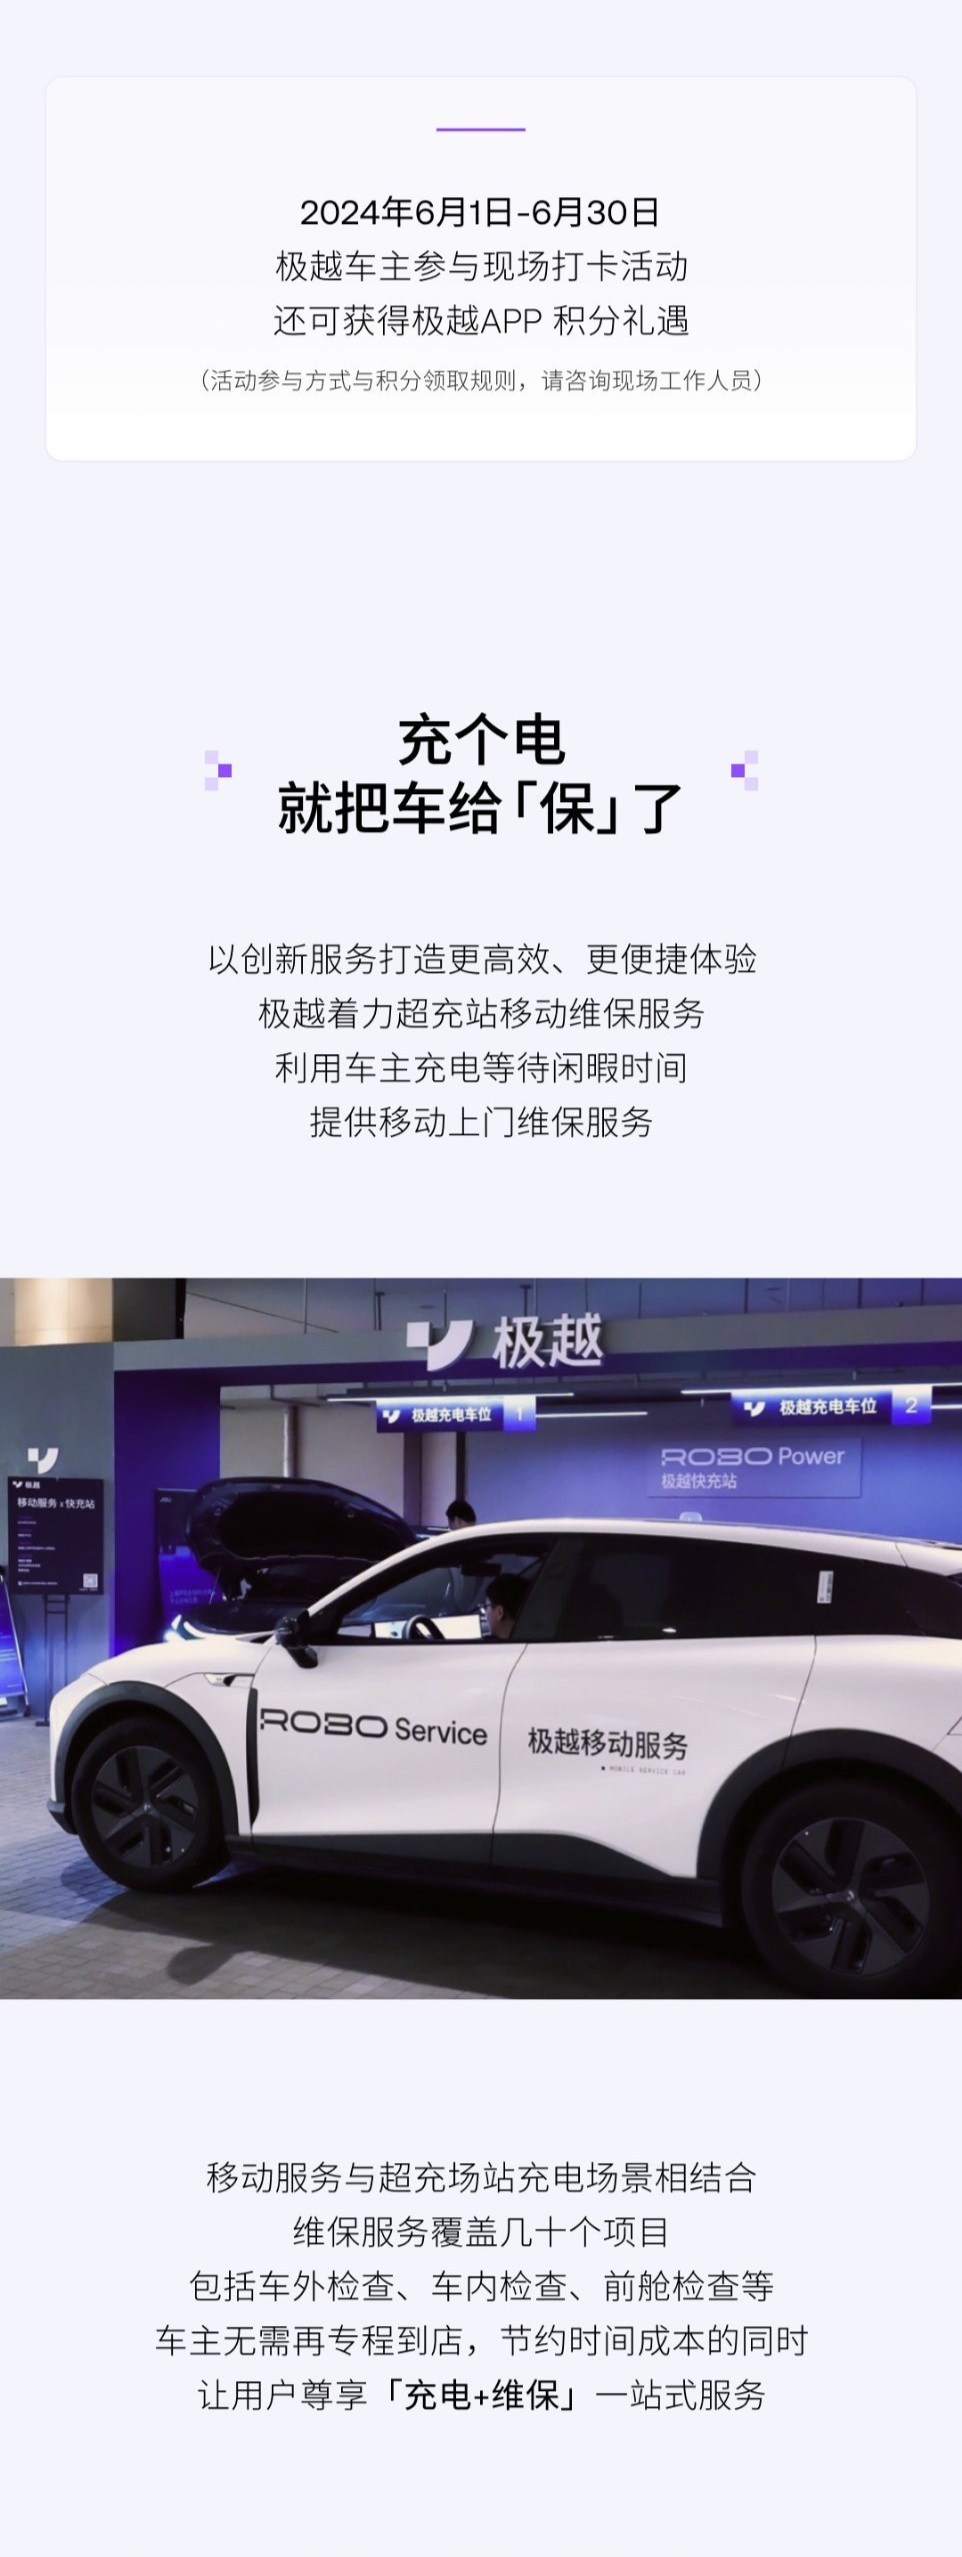 极越汽车首个尊享出行服务中心落地上海虹桥机场，提供“充电 + 维保”新模式售后  第3张